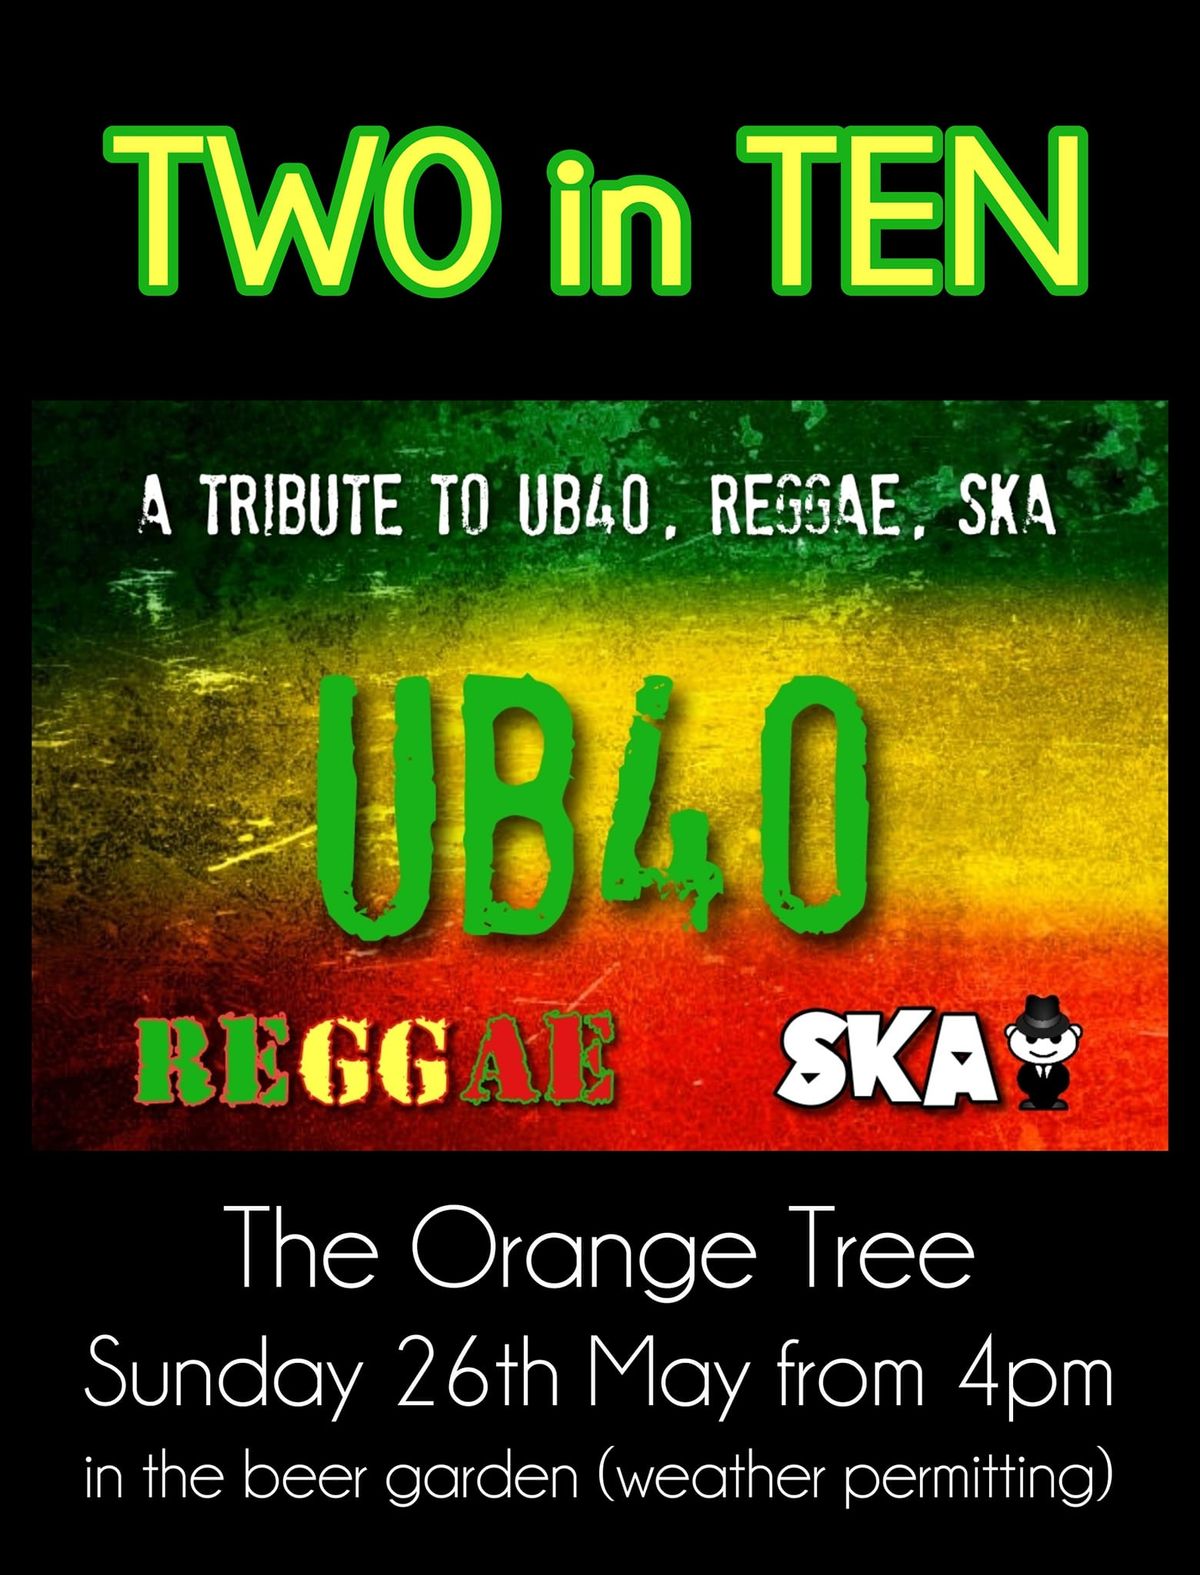 UB40, Reggae & SKA tribute in our garden!!